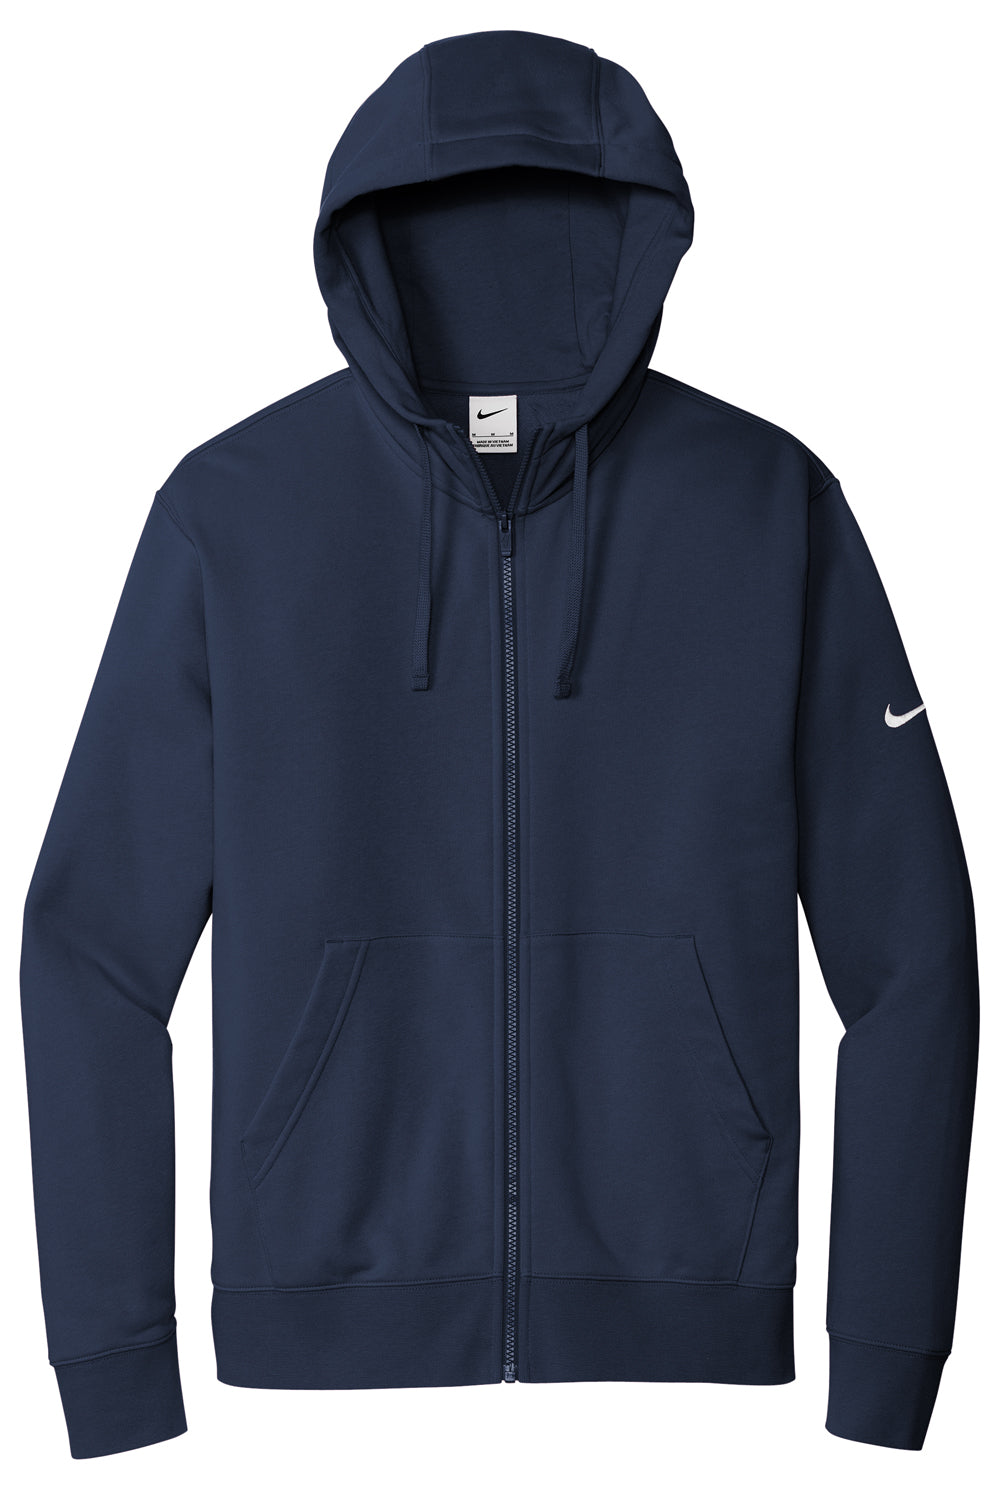 Nike NKDR1513 Mens Club Fleece Full Zip Hooded Sweatshirt Hoodie Midnight Navy Blue Flat Front